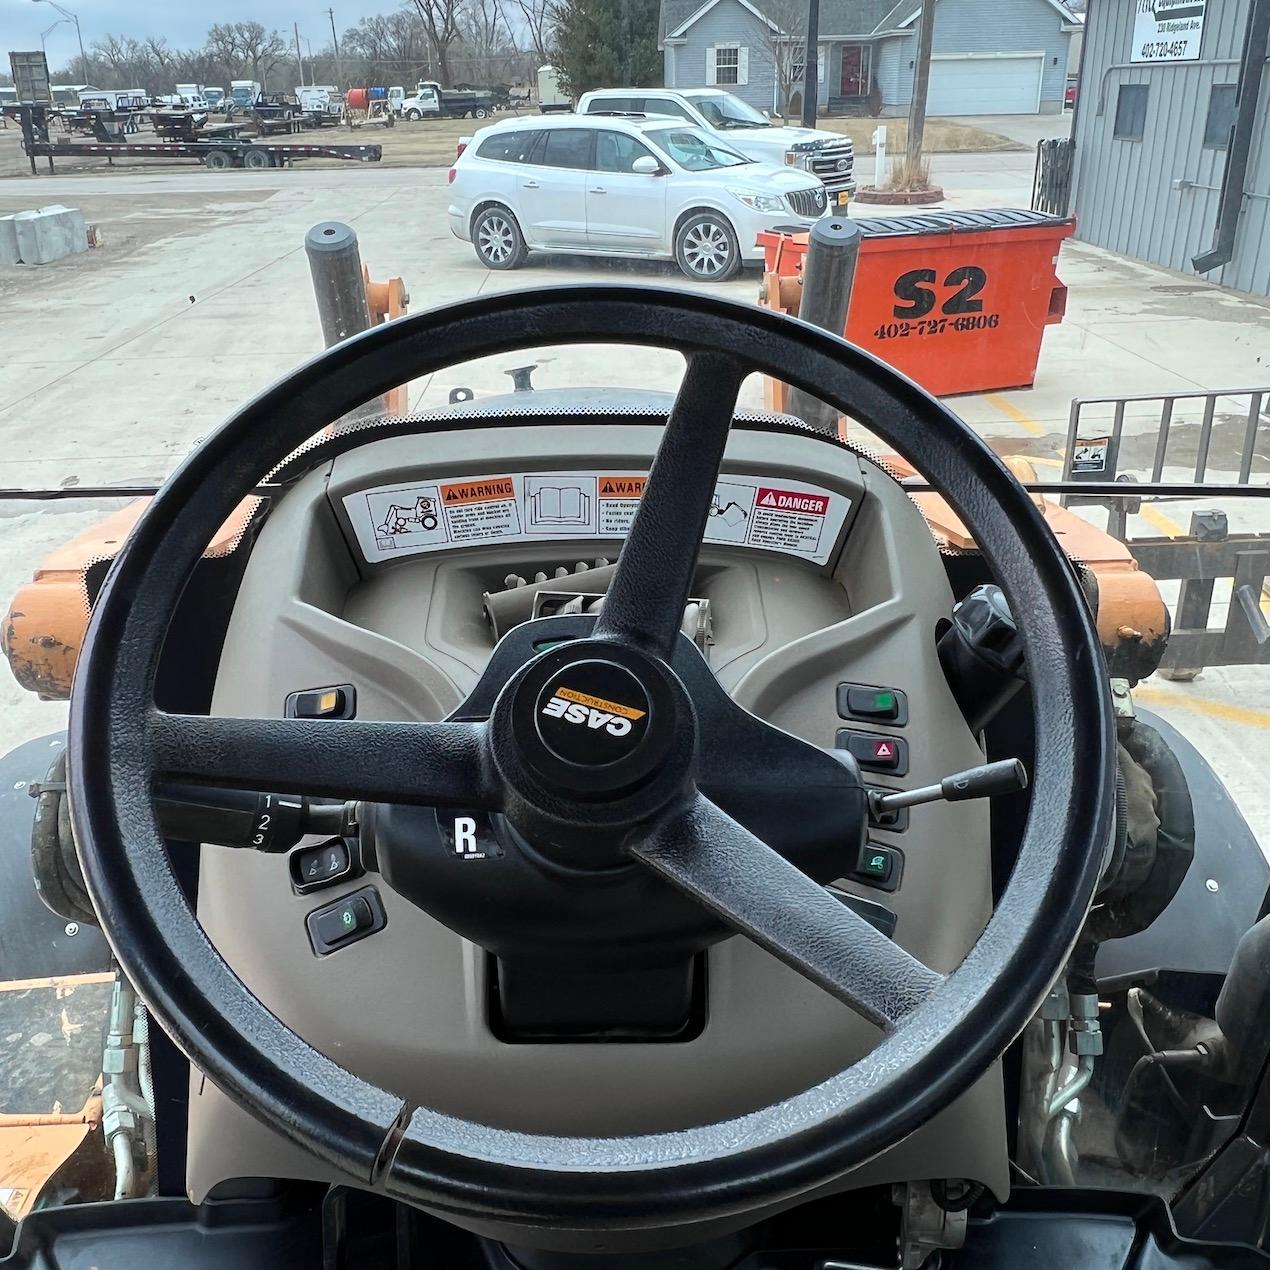 2015 Case 590 Super N Tractor Loader Backhoe - 3,460 Hours